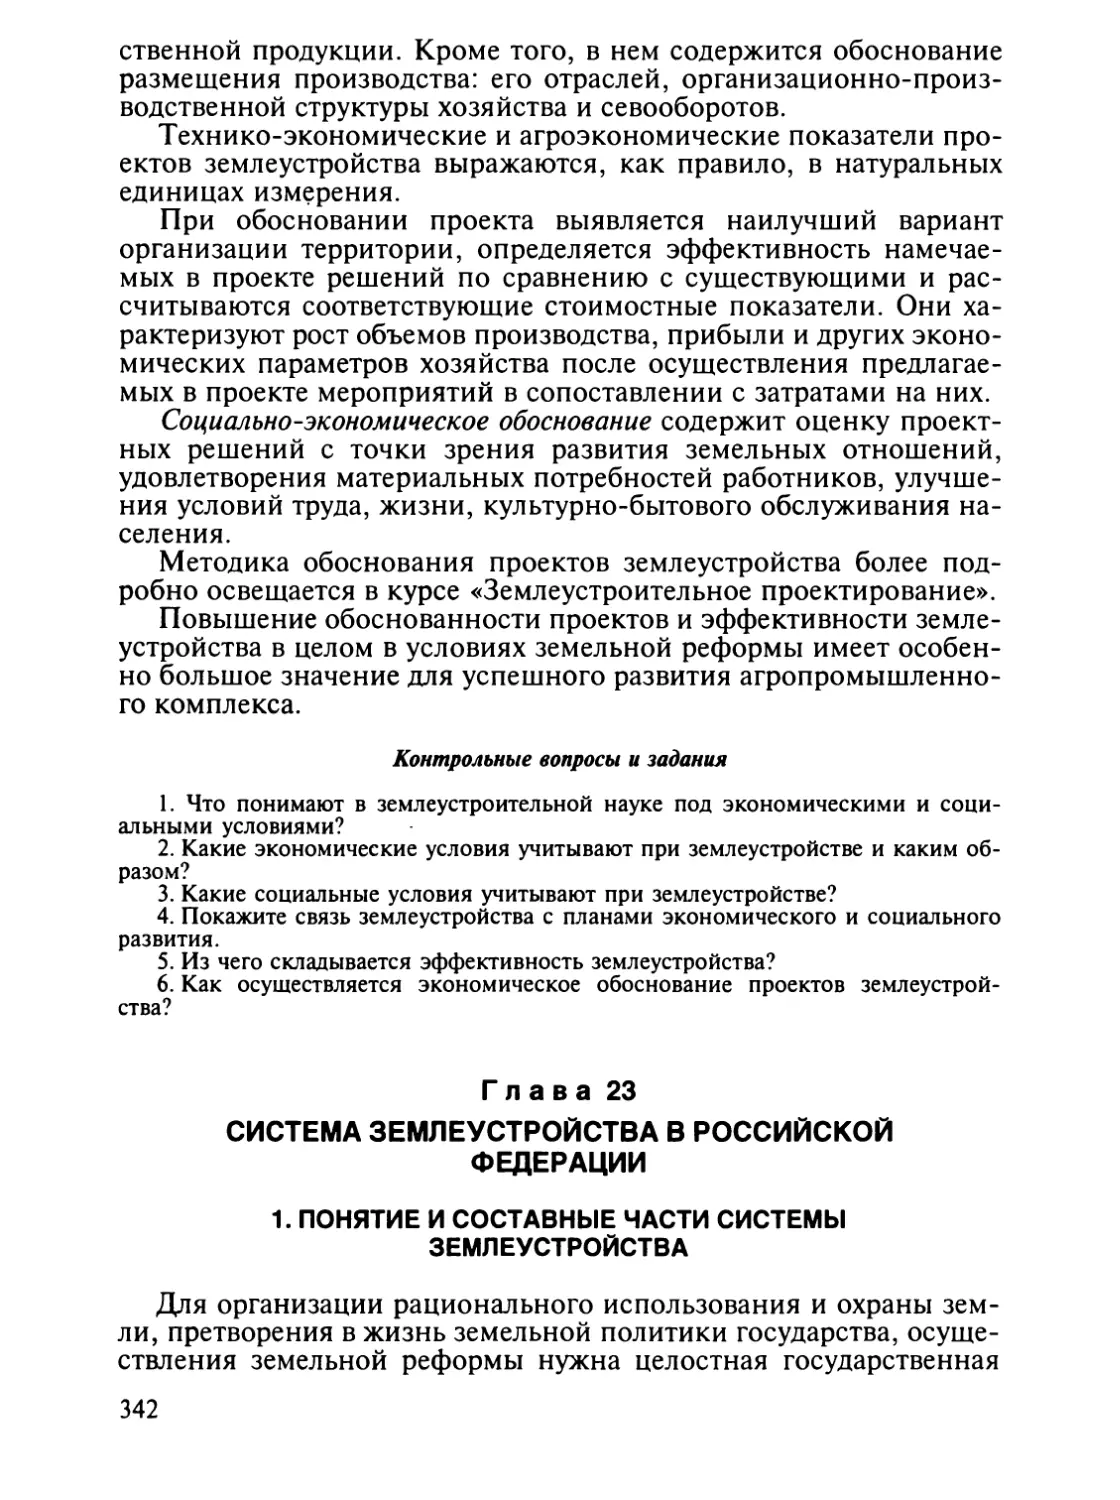 Глава 23. Система землеустройства в Российской Федерации